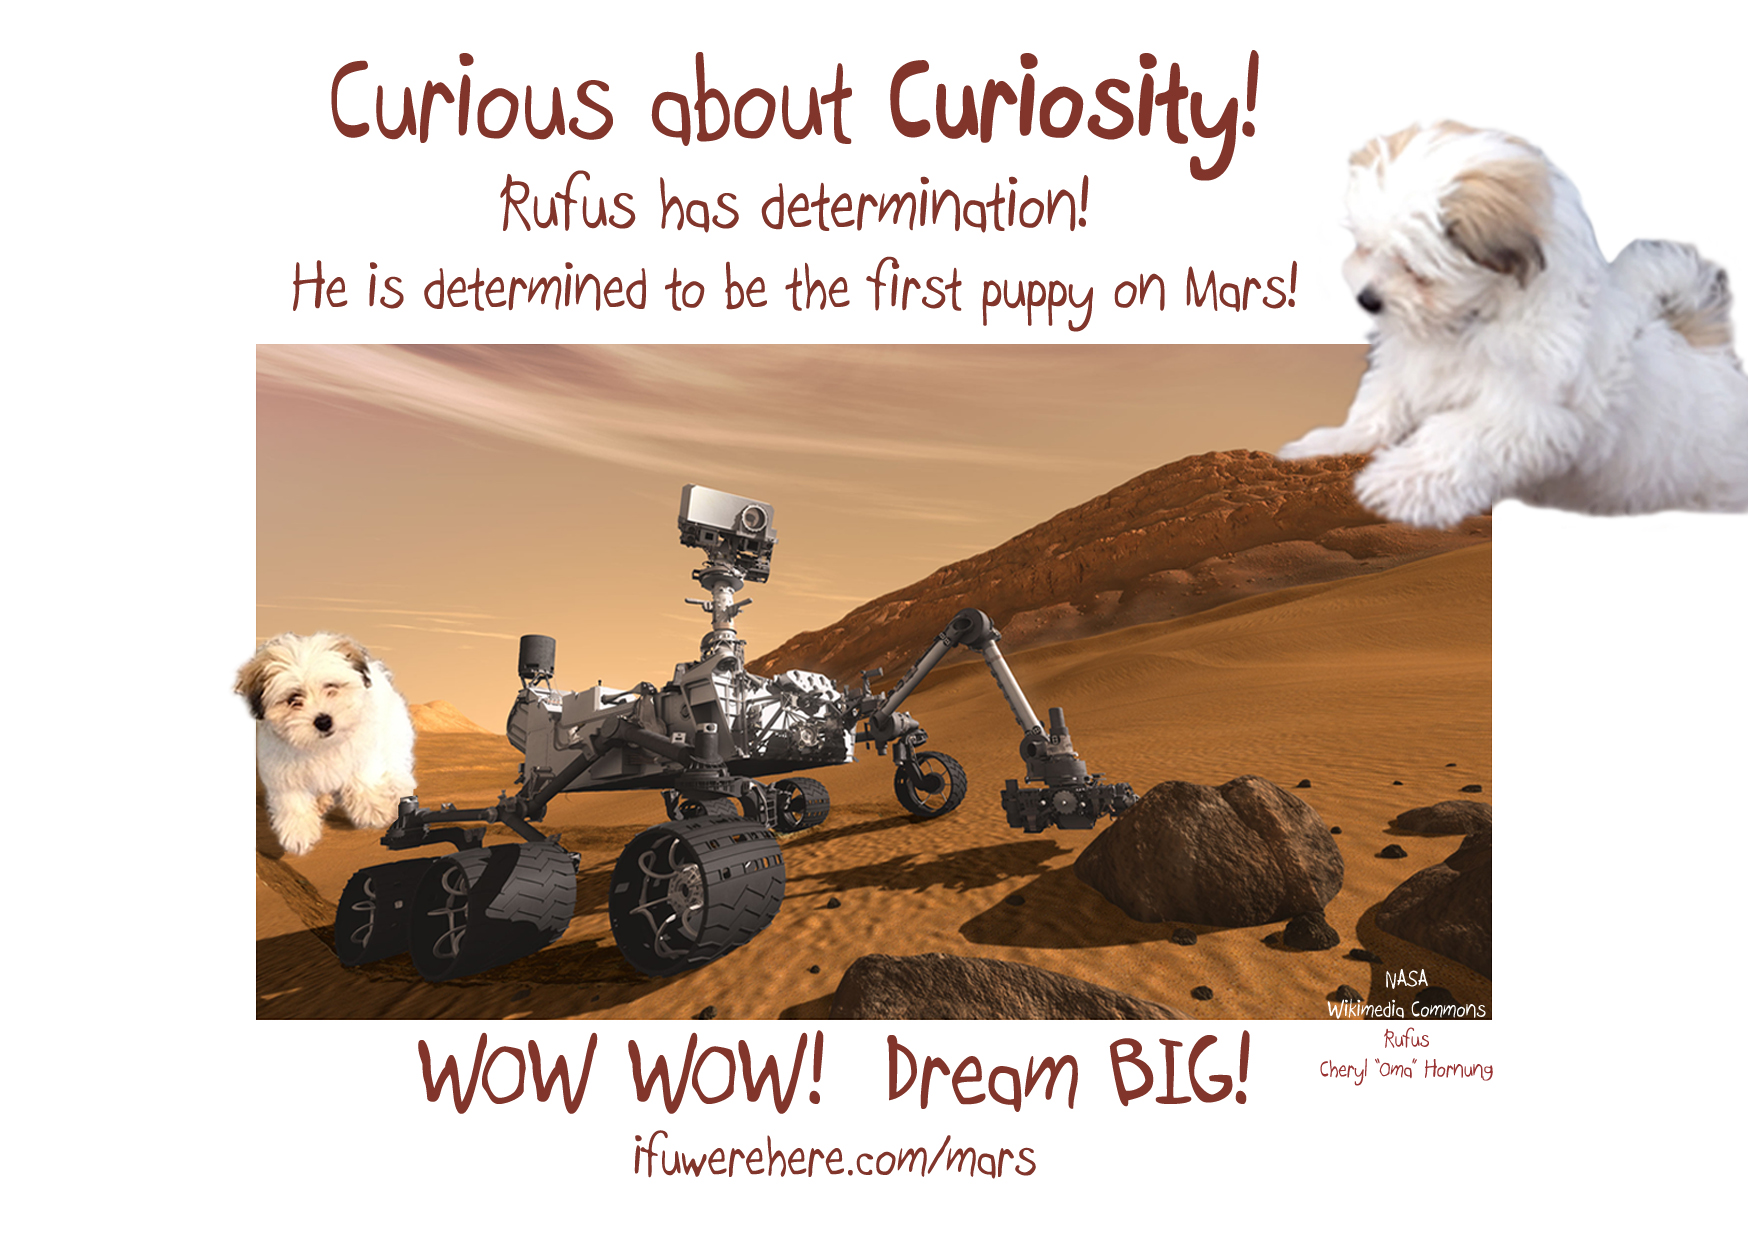 Rufus on Mars